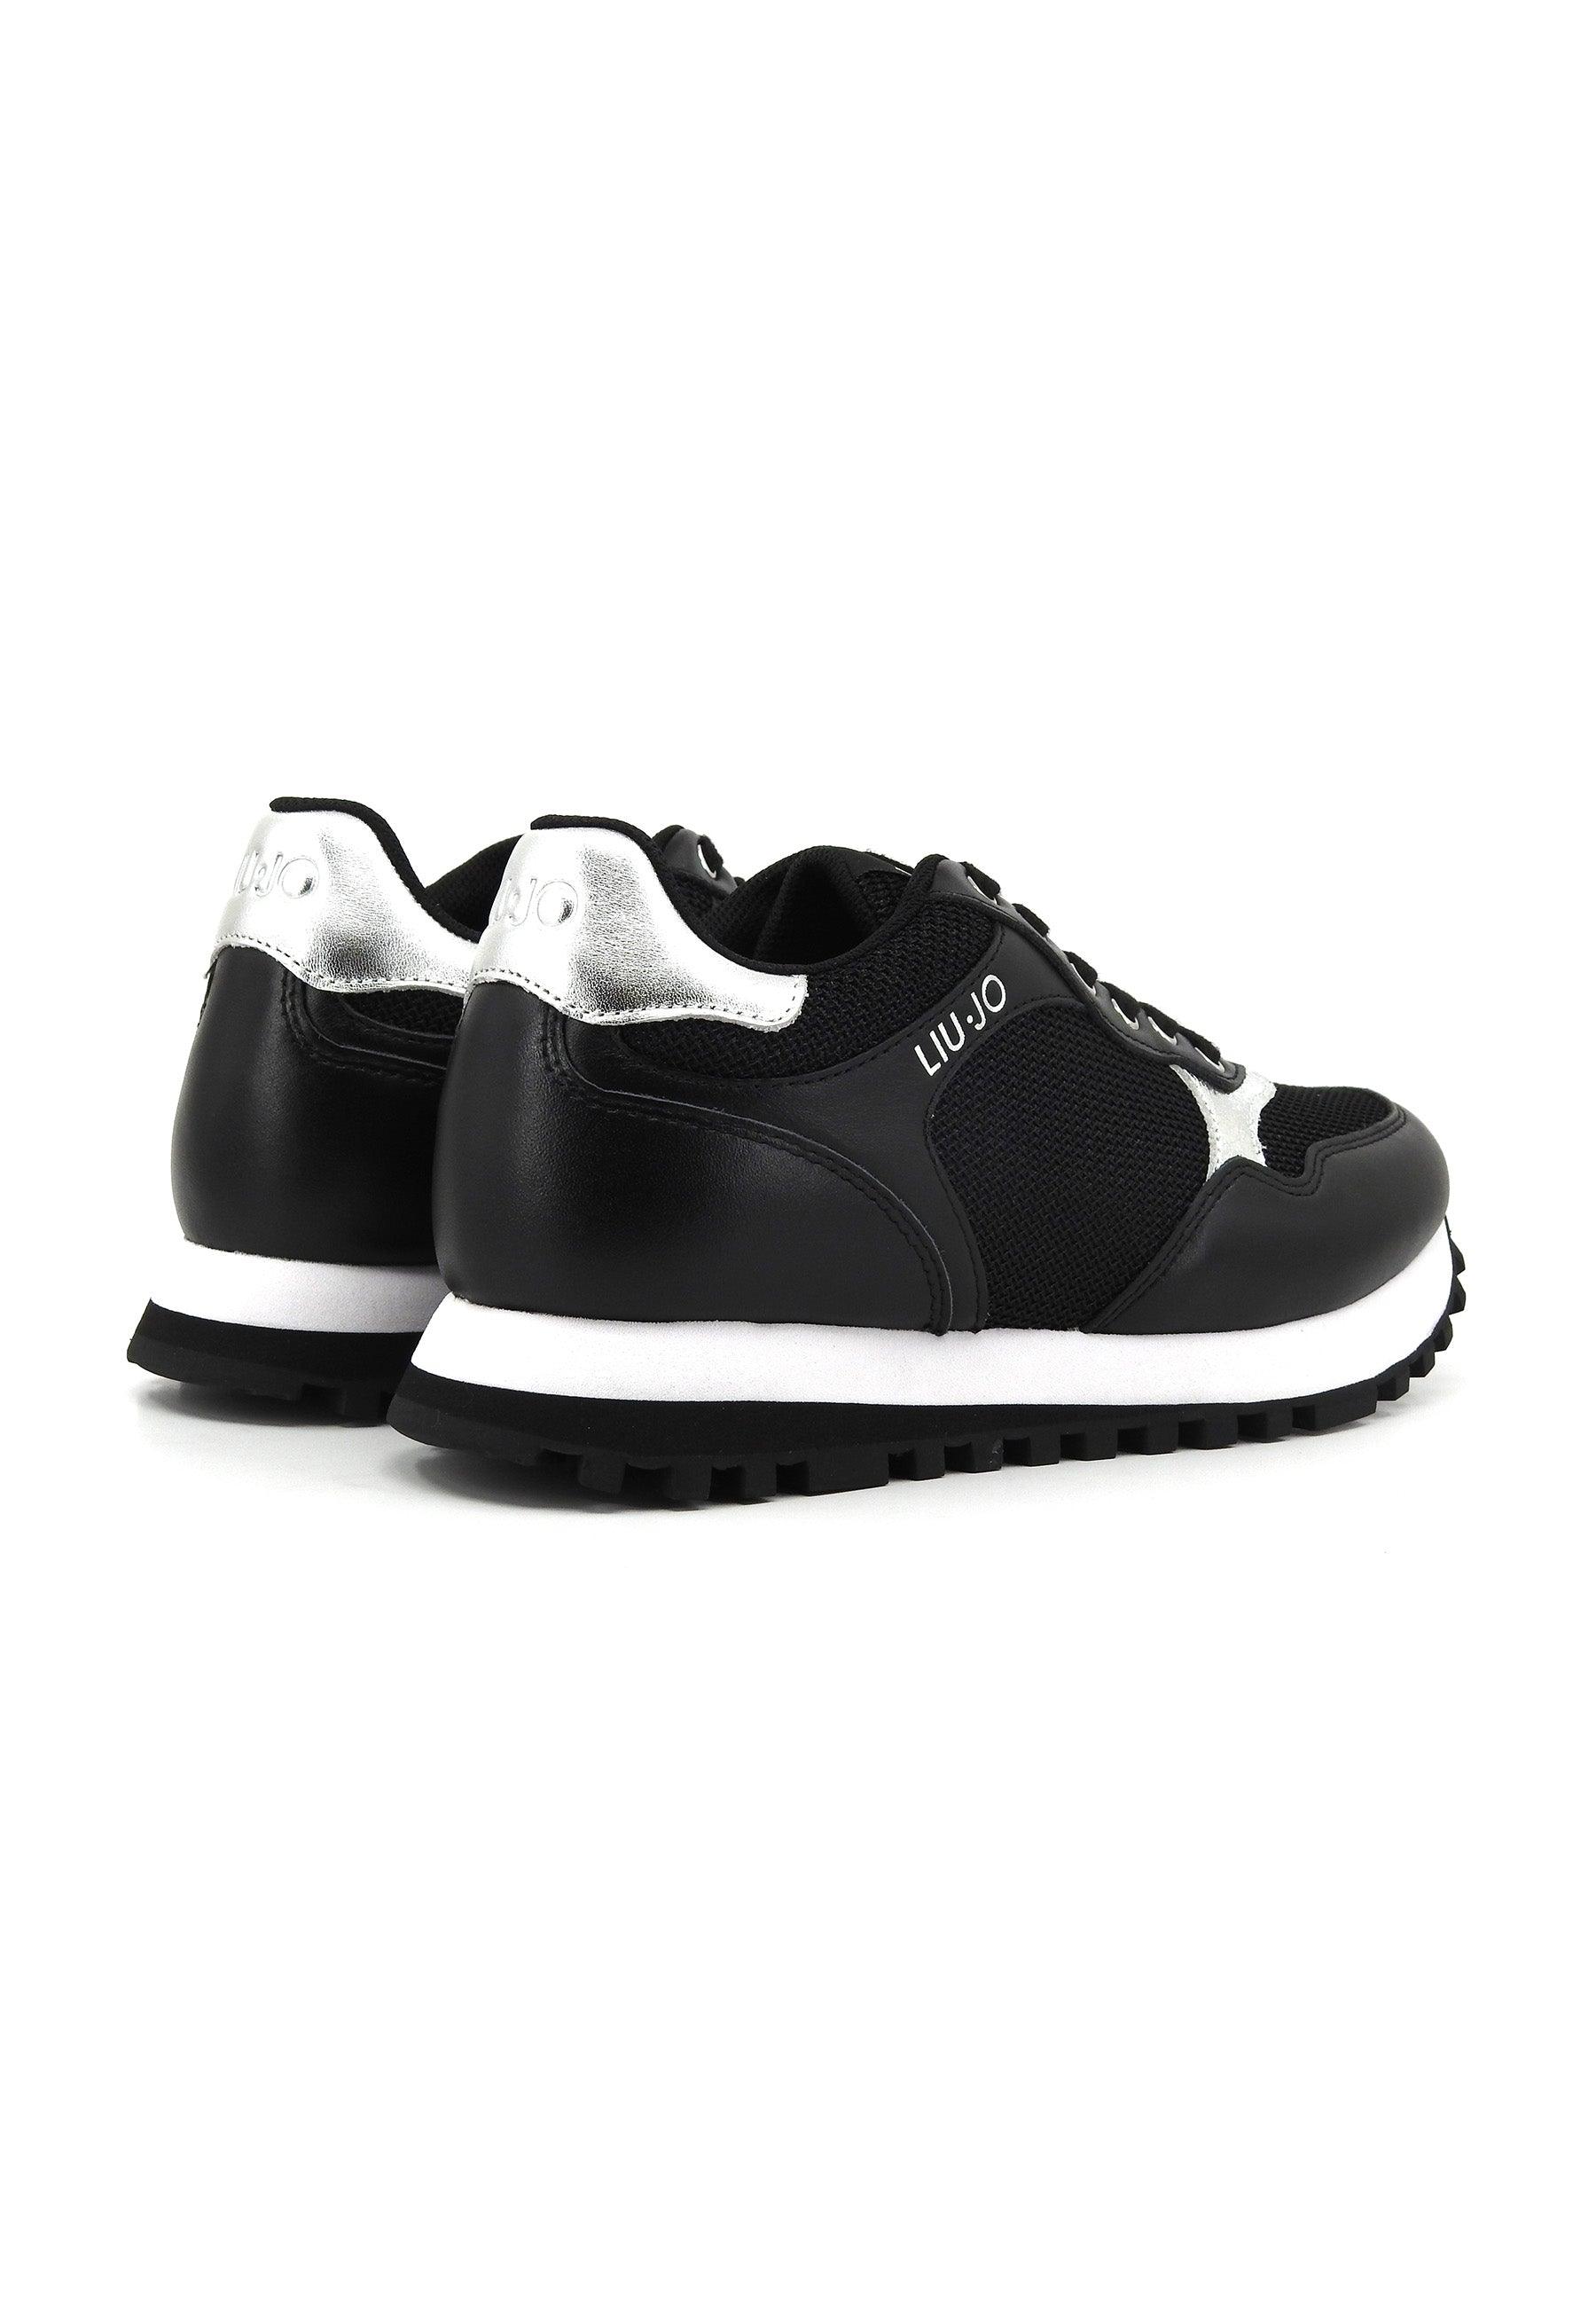 LIU JO Wonder 39 Sneaker Donna Black BA4067PX030 - Sandrini Calzature e Abbigliamento